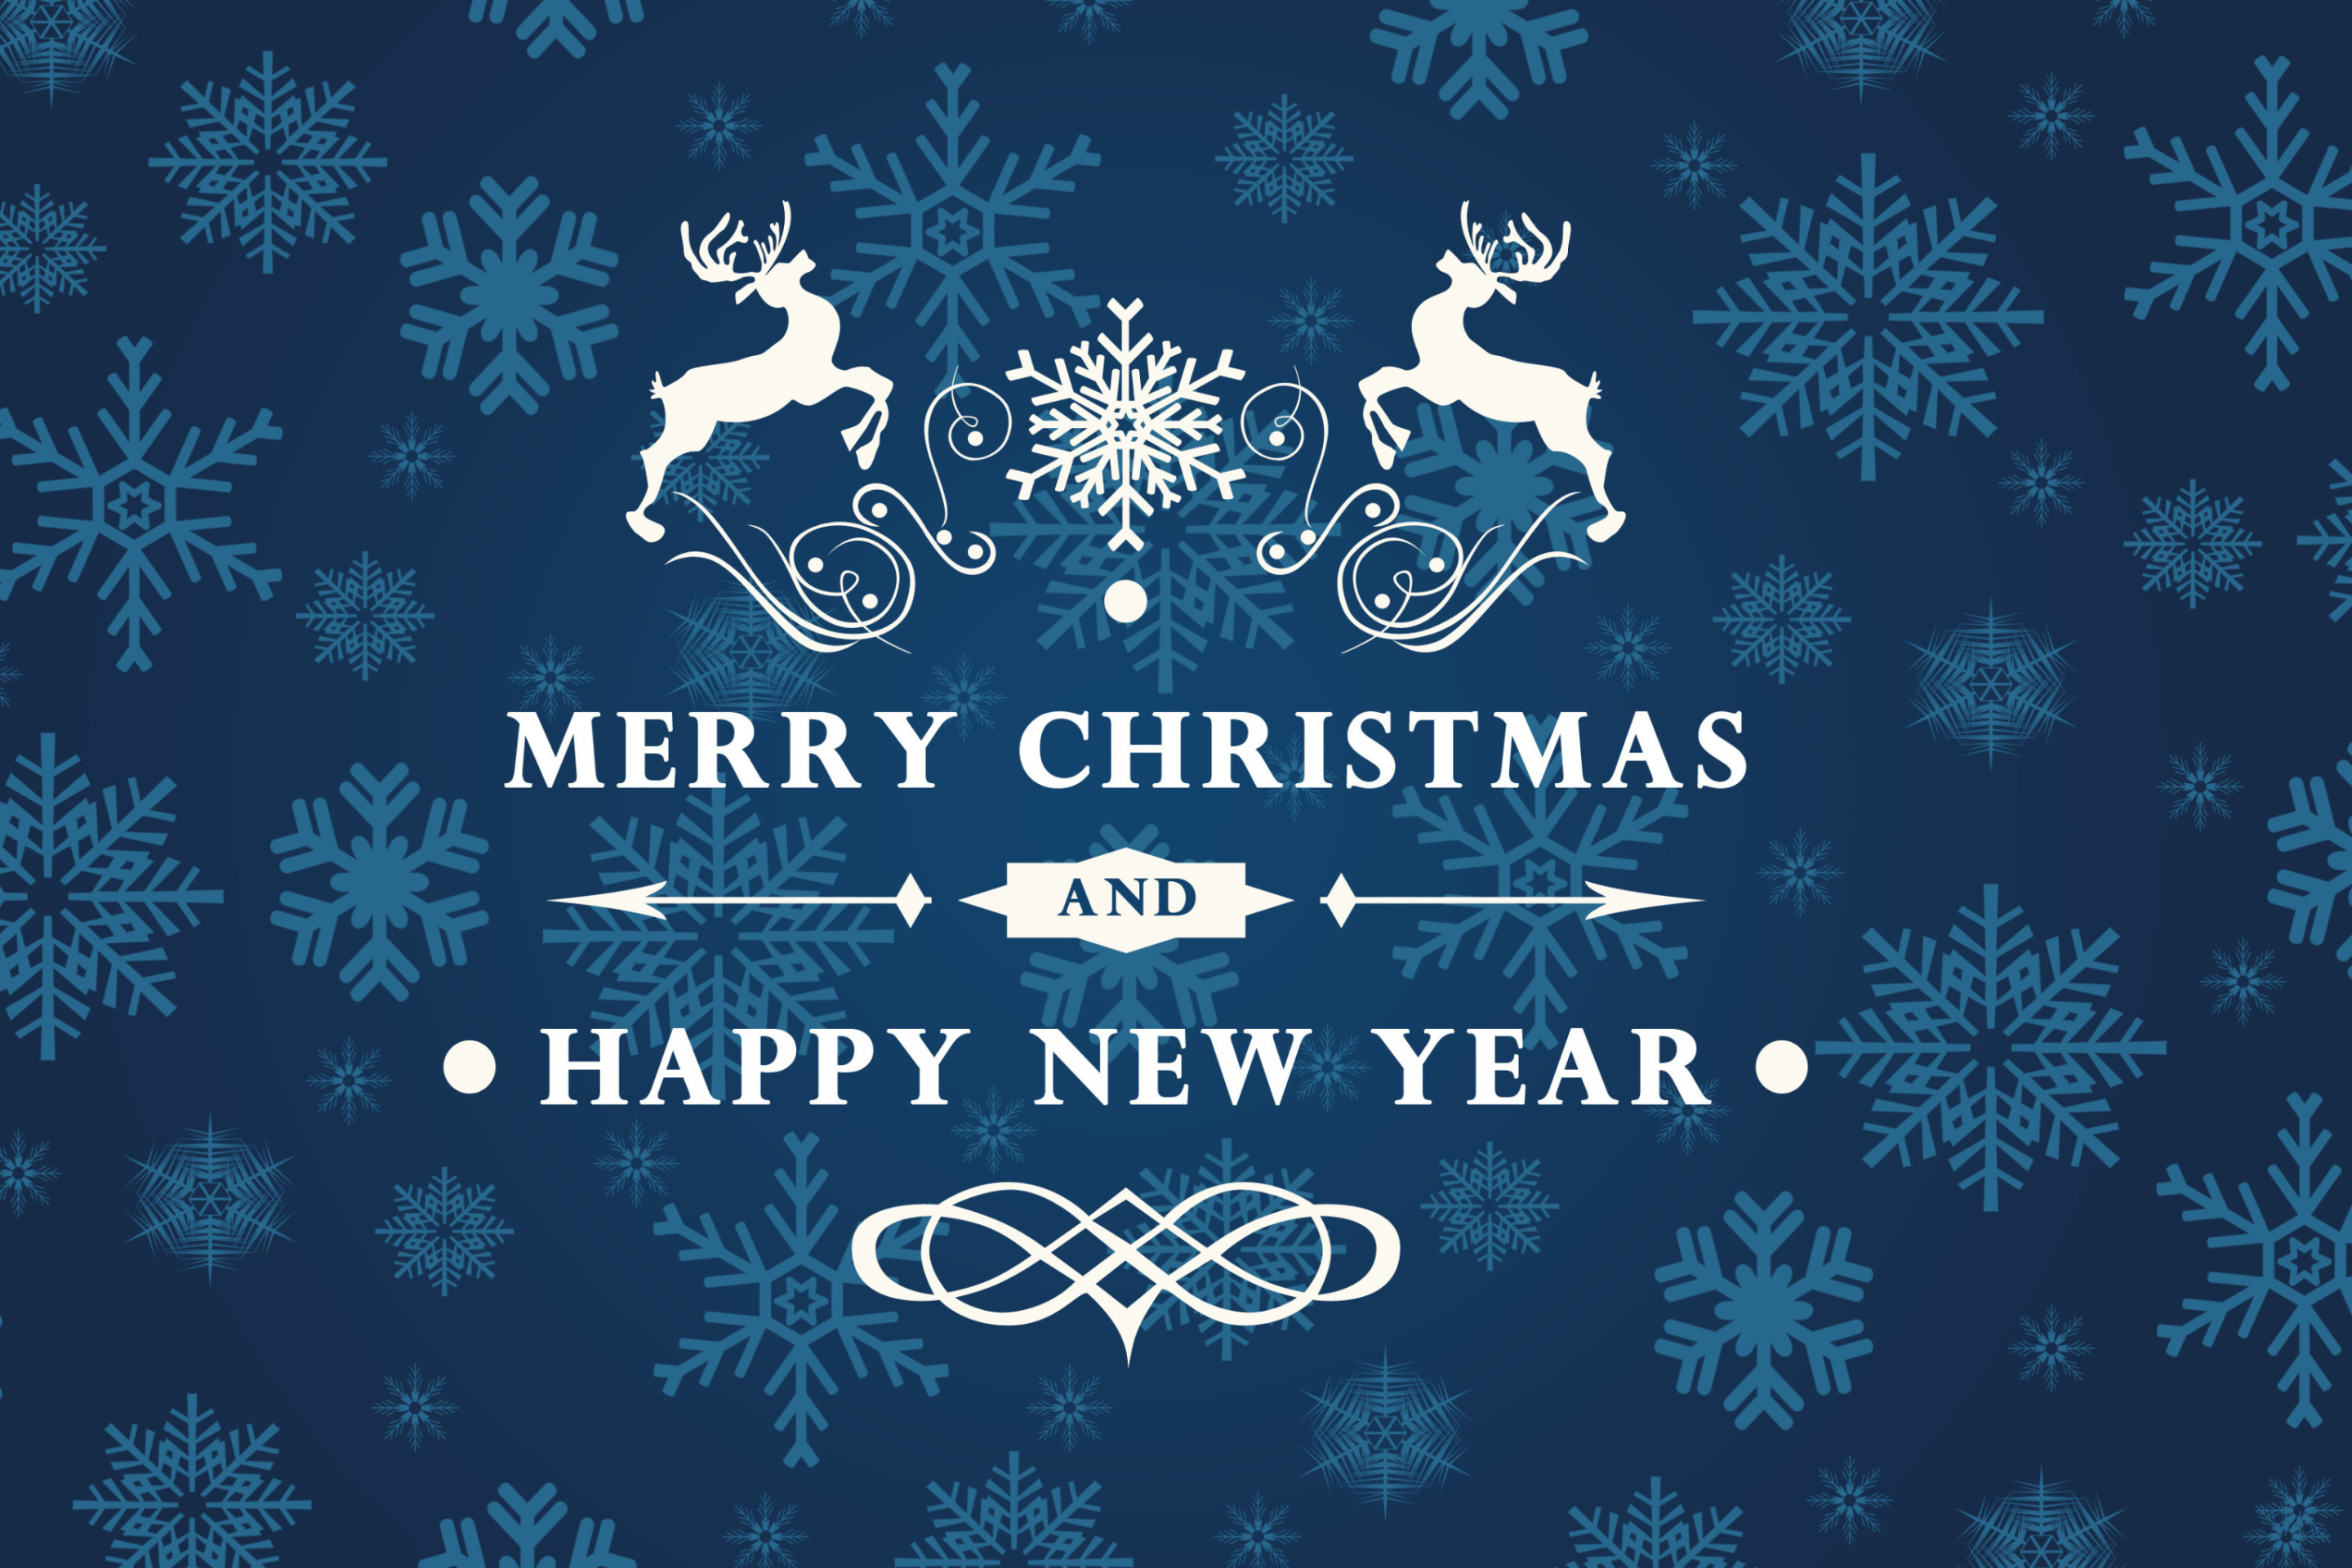 Обои Reindeer wish Merry Christmas and Happy New Year 2880x1920